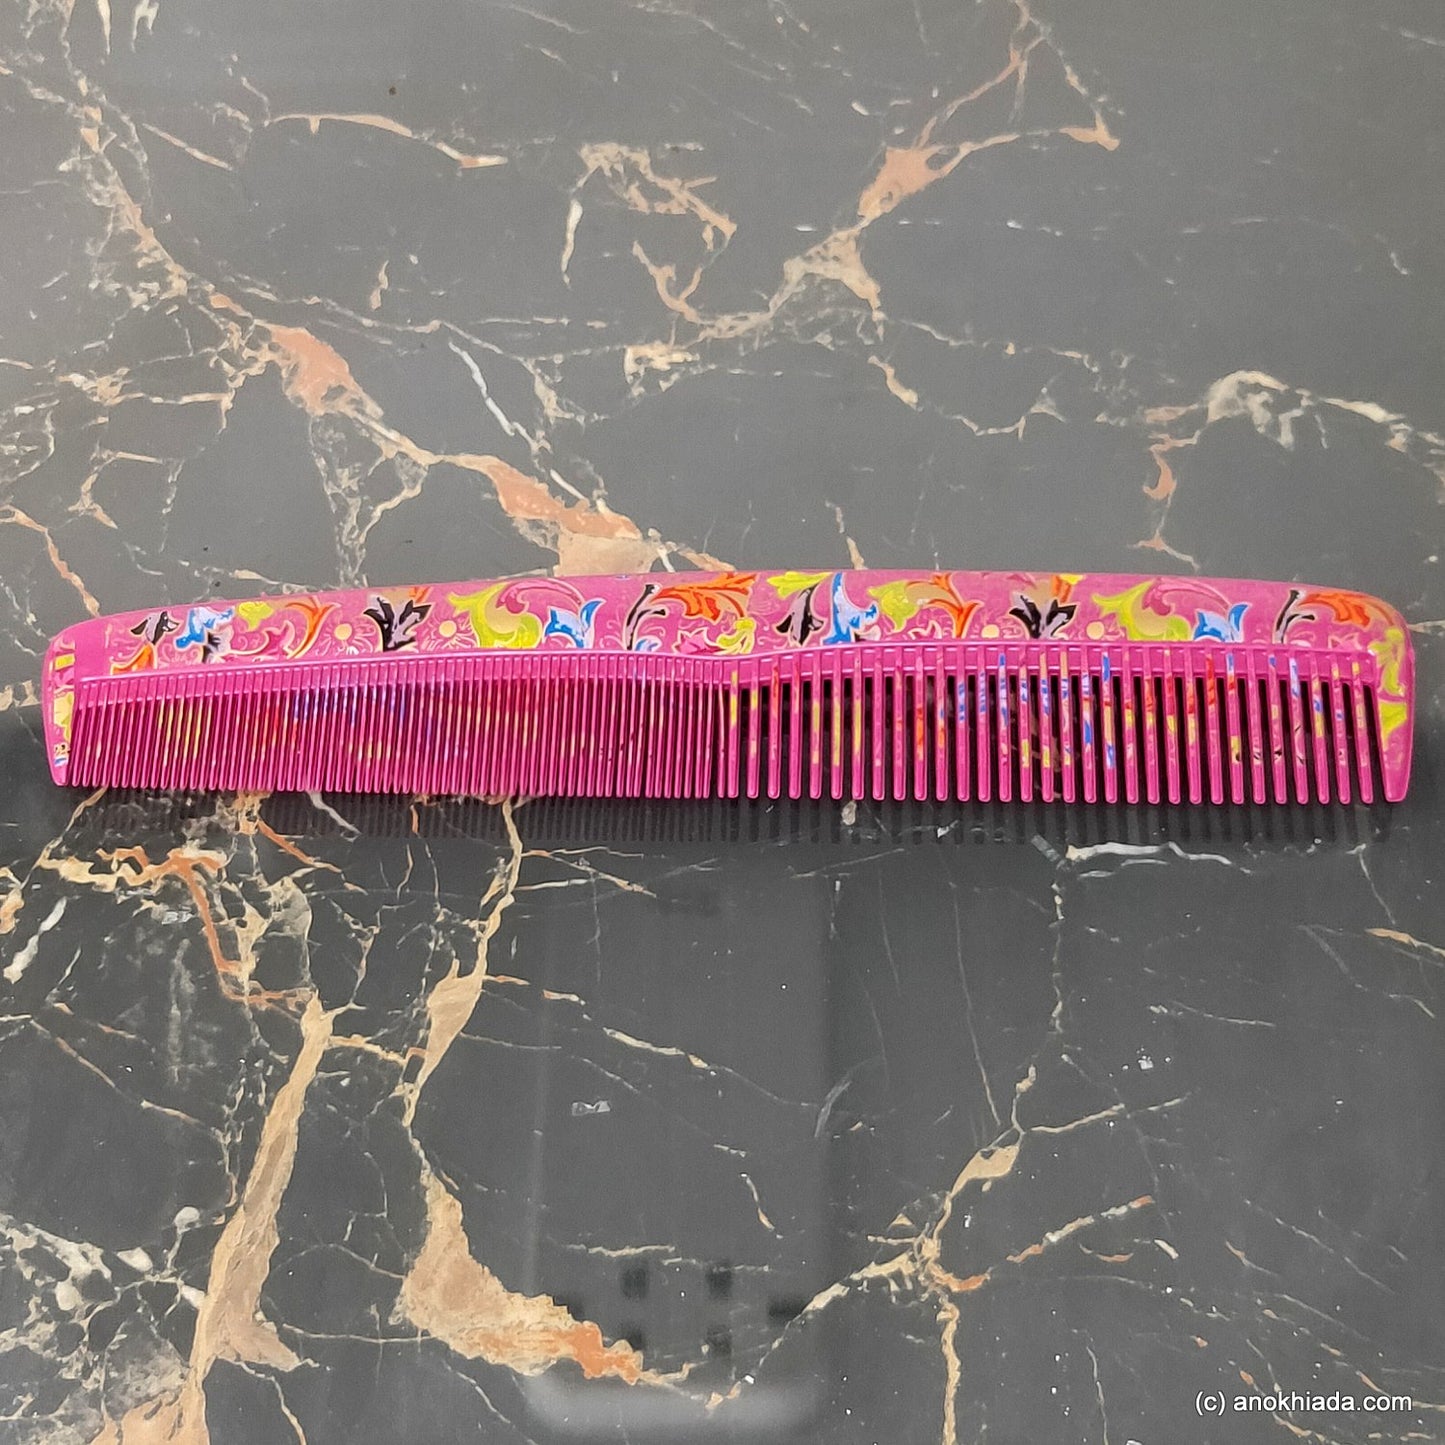 Anokhi Ada Plastic Floral Print Comb, 9-inch, Pink (Comb-026)